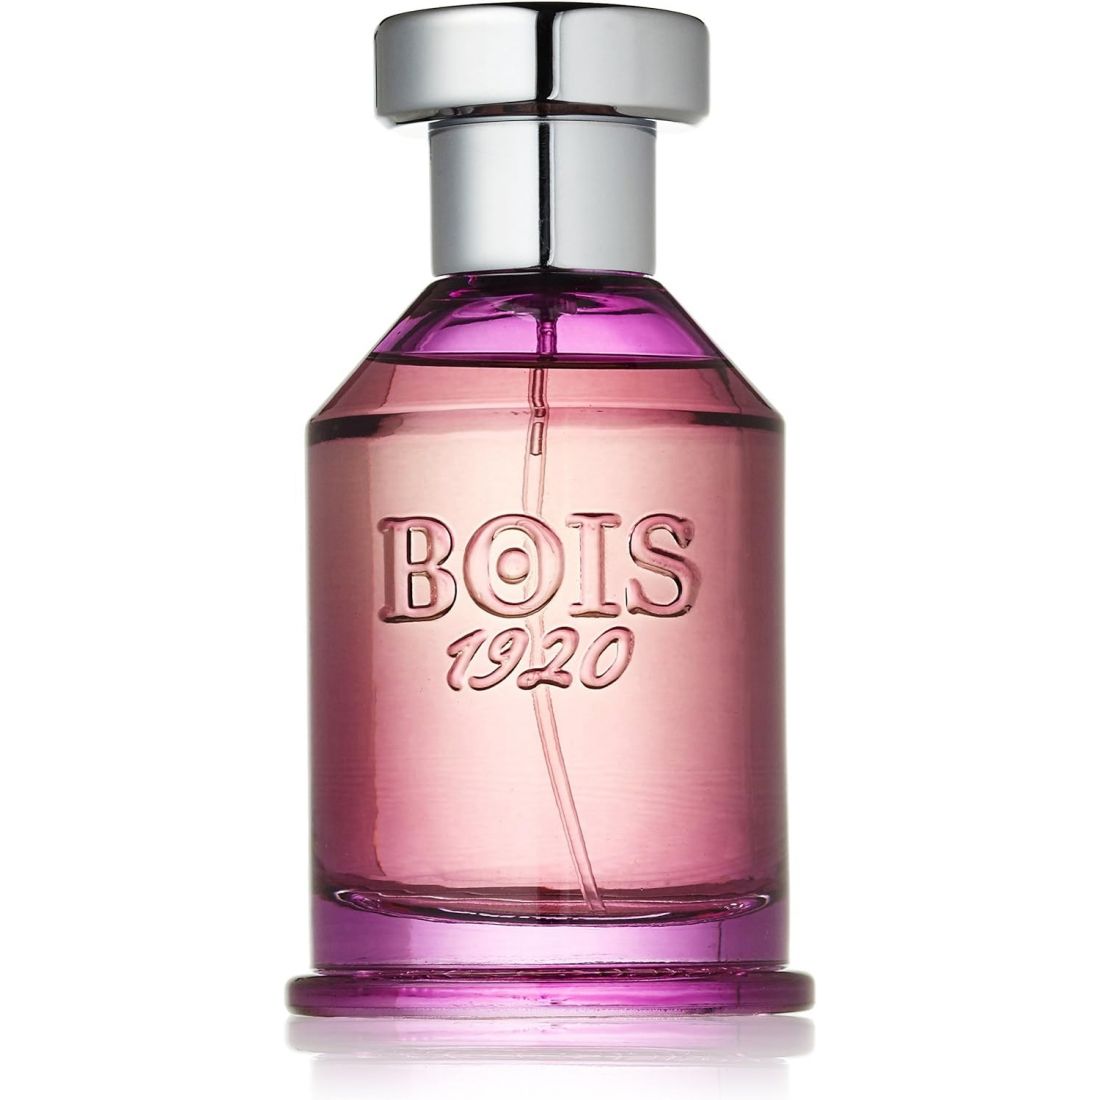 Bois 1920 - Eau de parfum 'Spigo 1920' - 100 ml